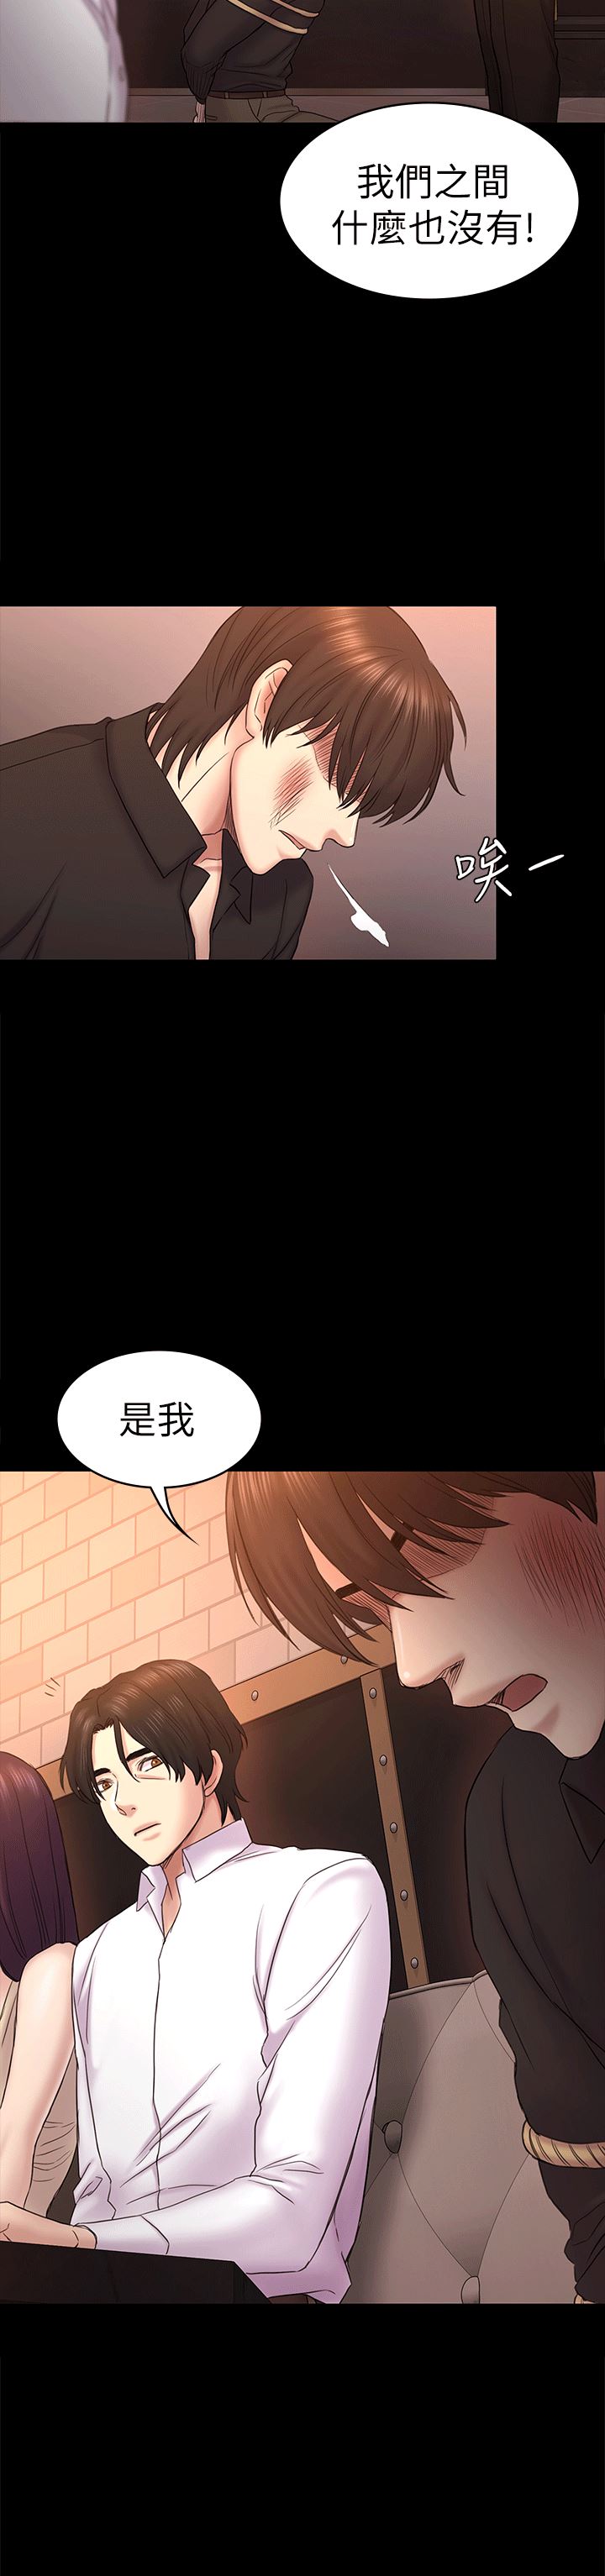 韩国污漫画 初戀陷阱 第55话-想离开的蓝天 2